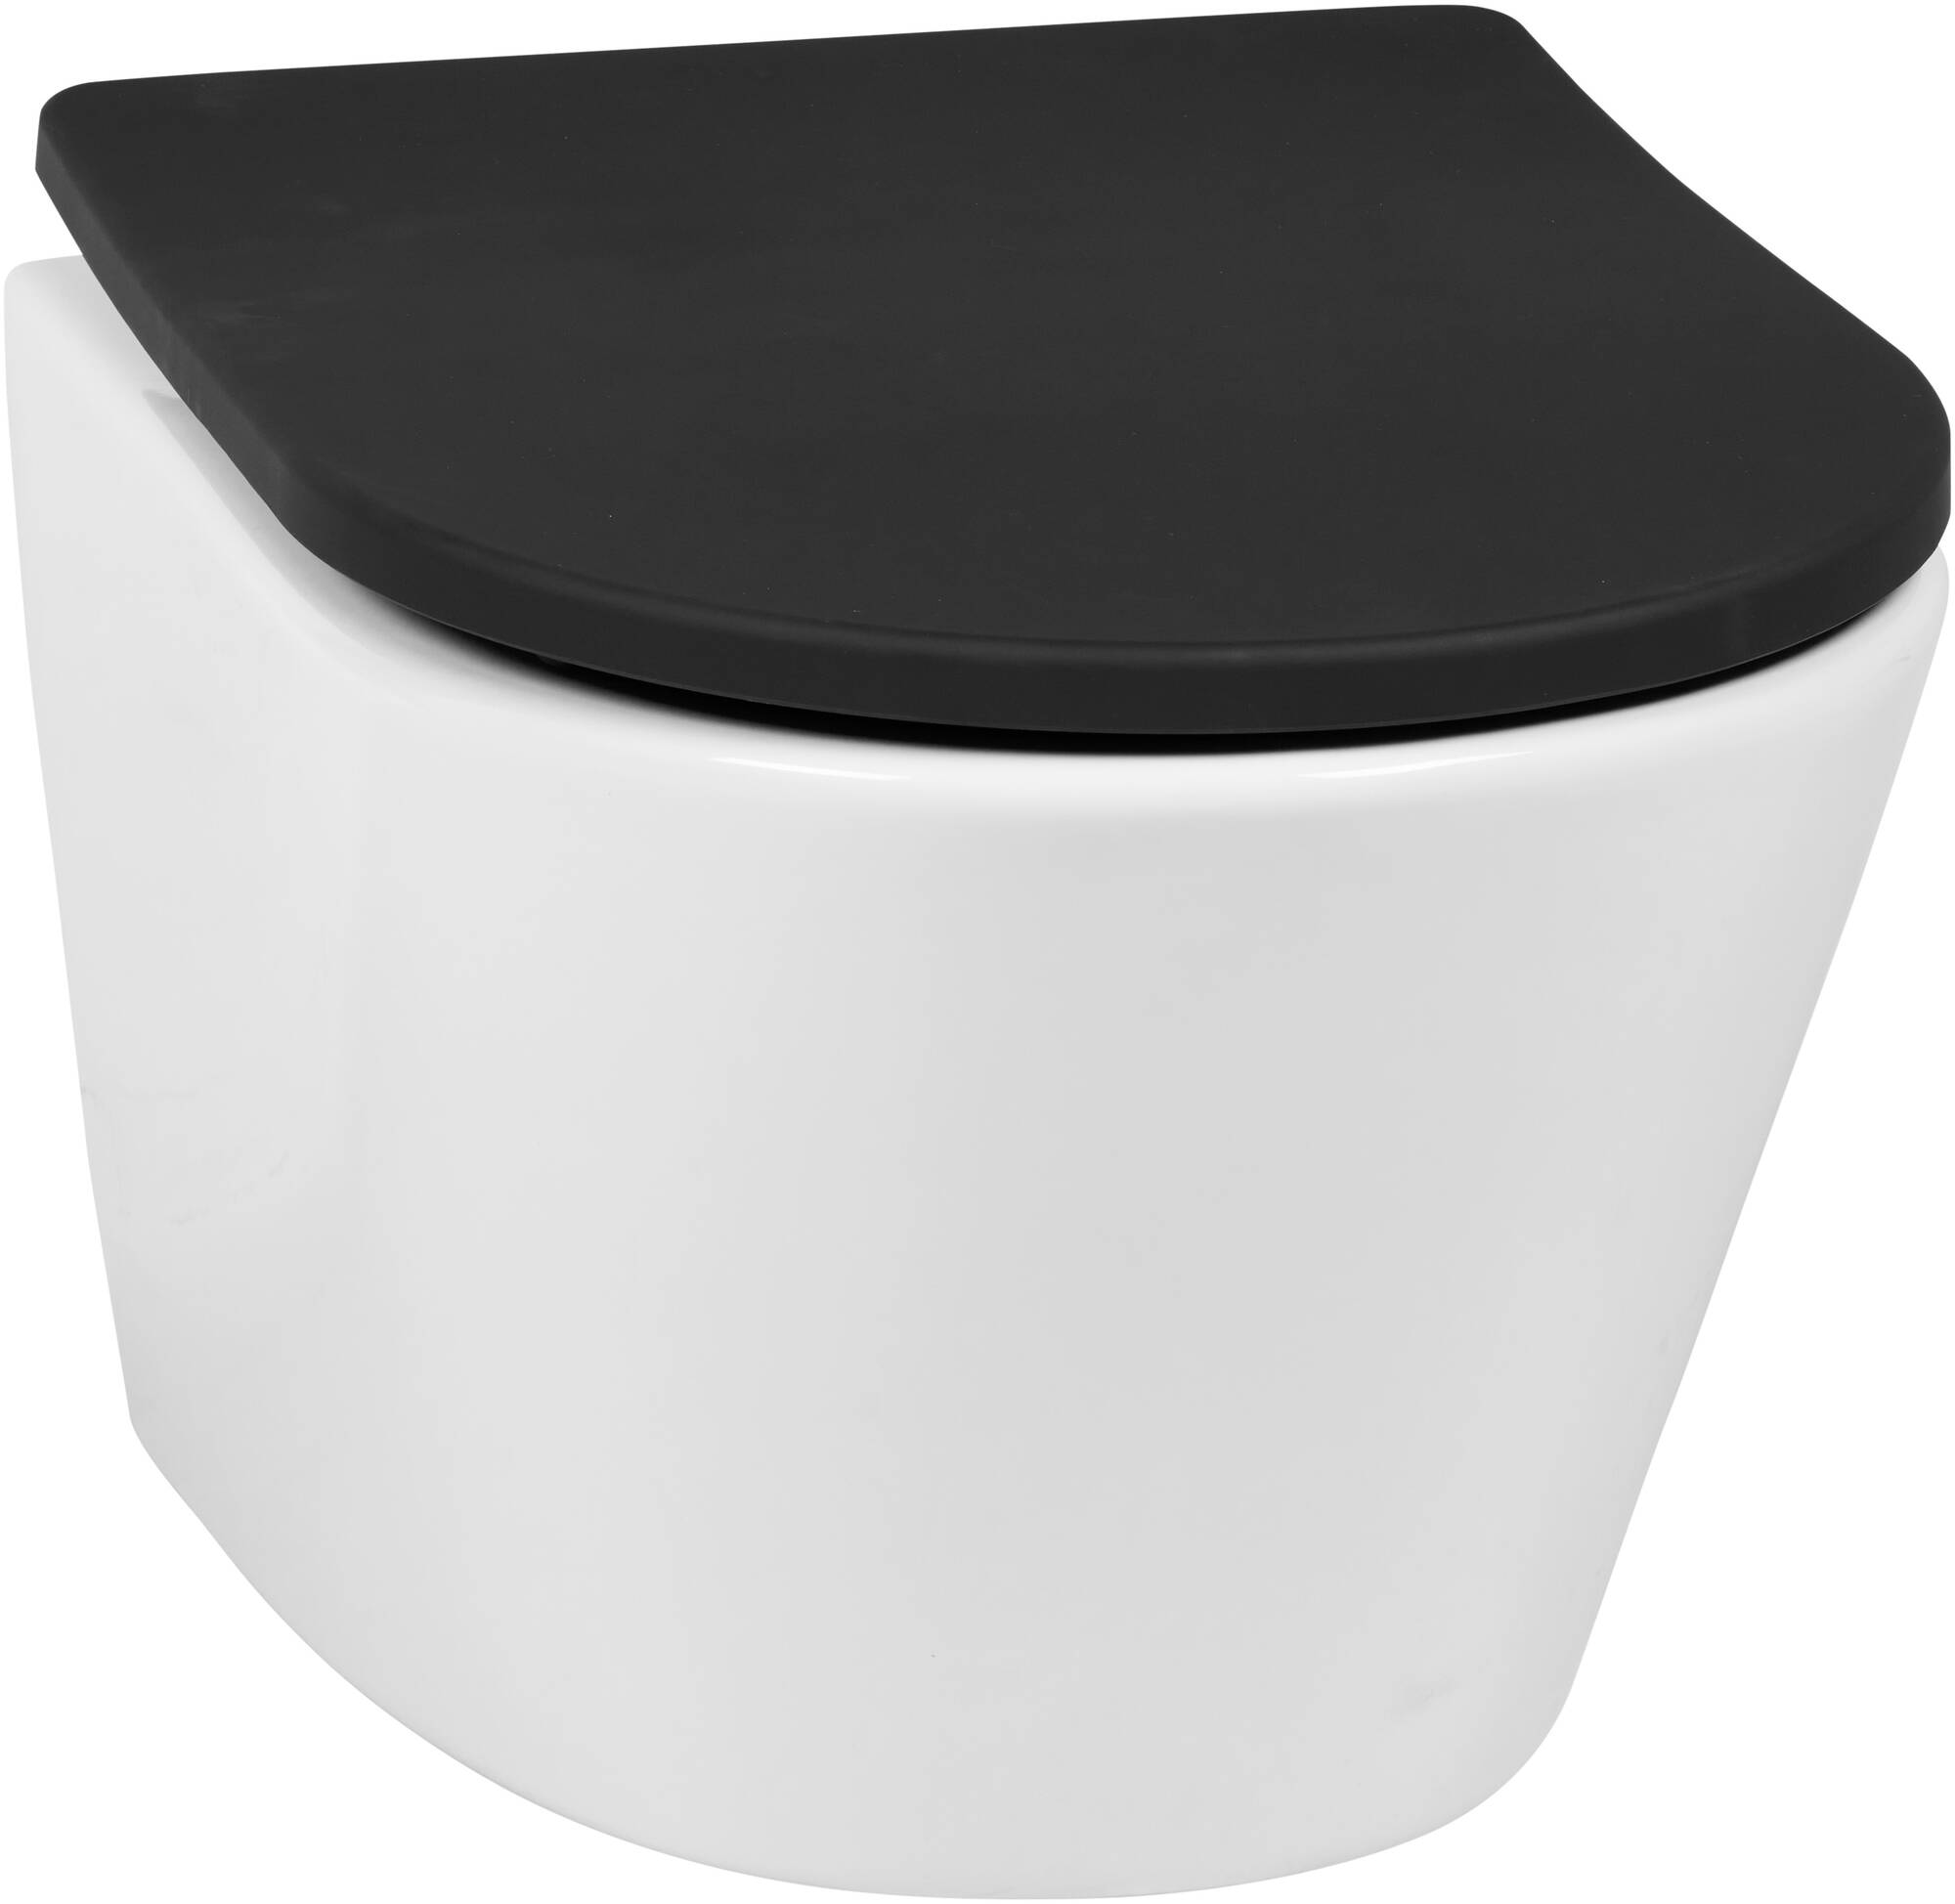 Saqu Sky 2.0 compact randloos hangtoilet met slimseat toiletbril met quickrelease Wit Zwart